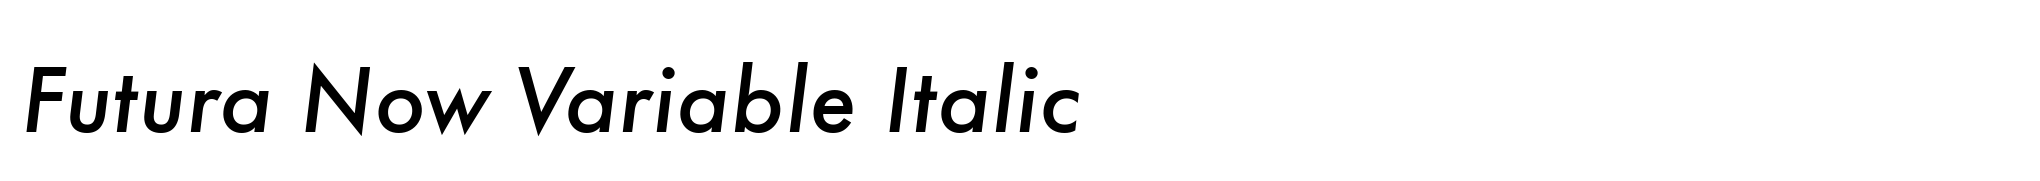 Futura Now Variable Italic image